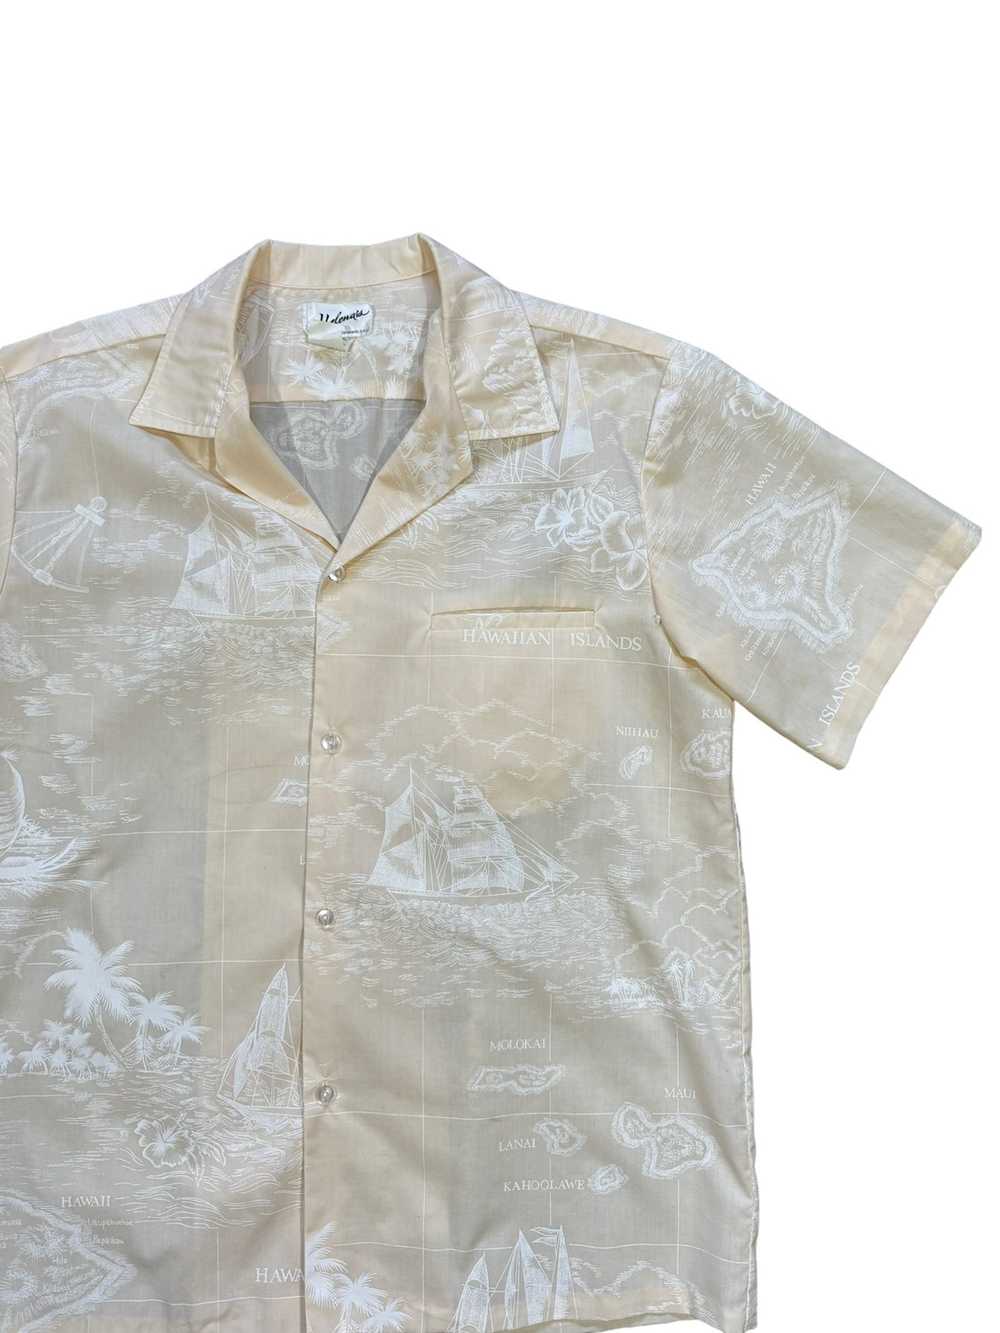 Hawaiian Shirt × Made In Hawaii × Vintage 60s Hel… - image 2